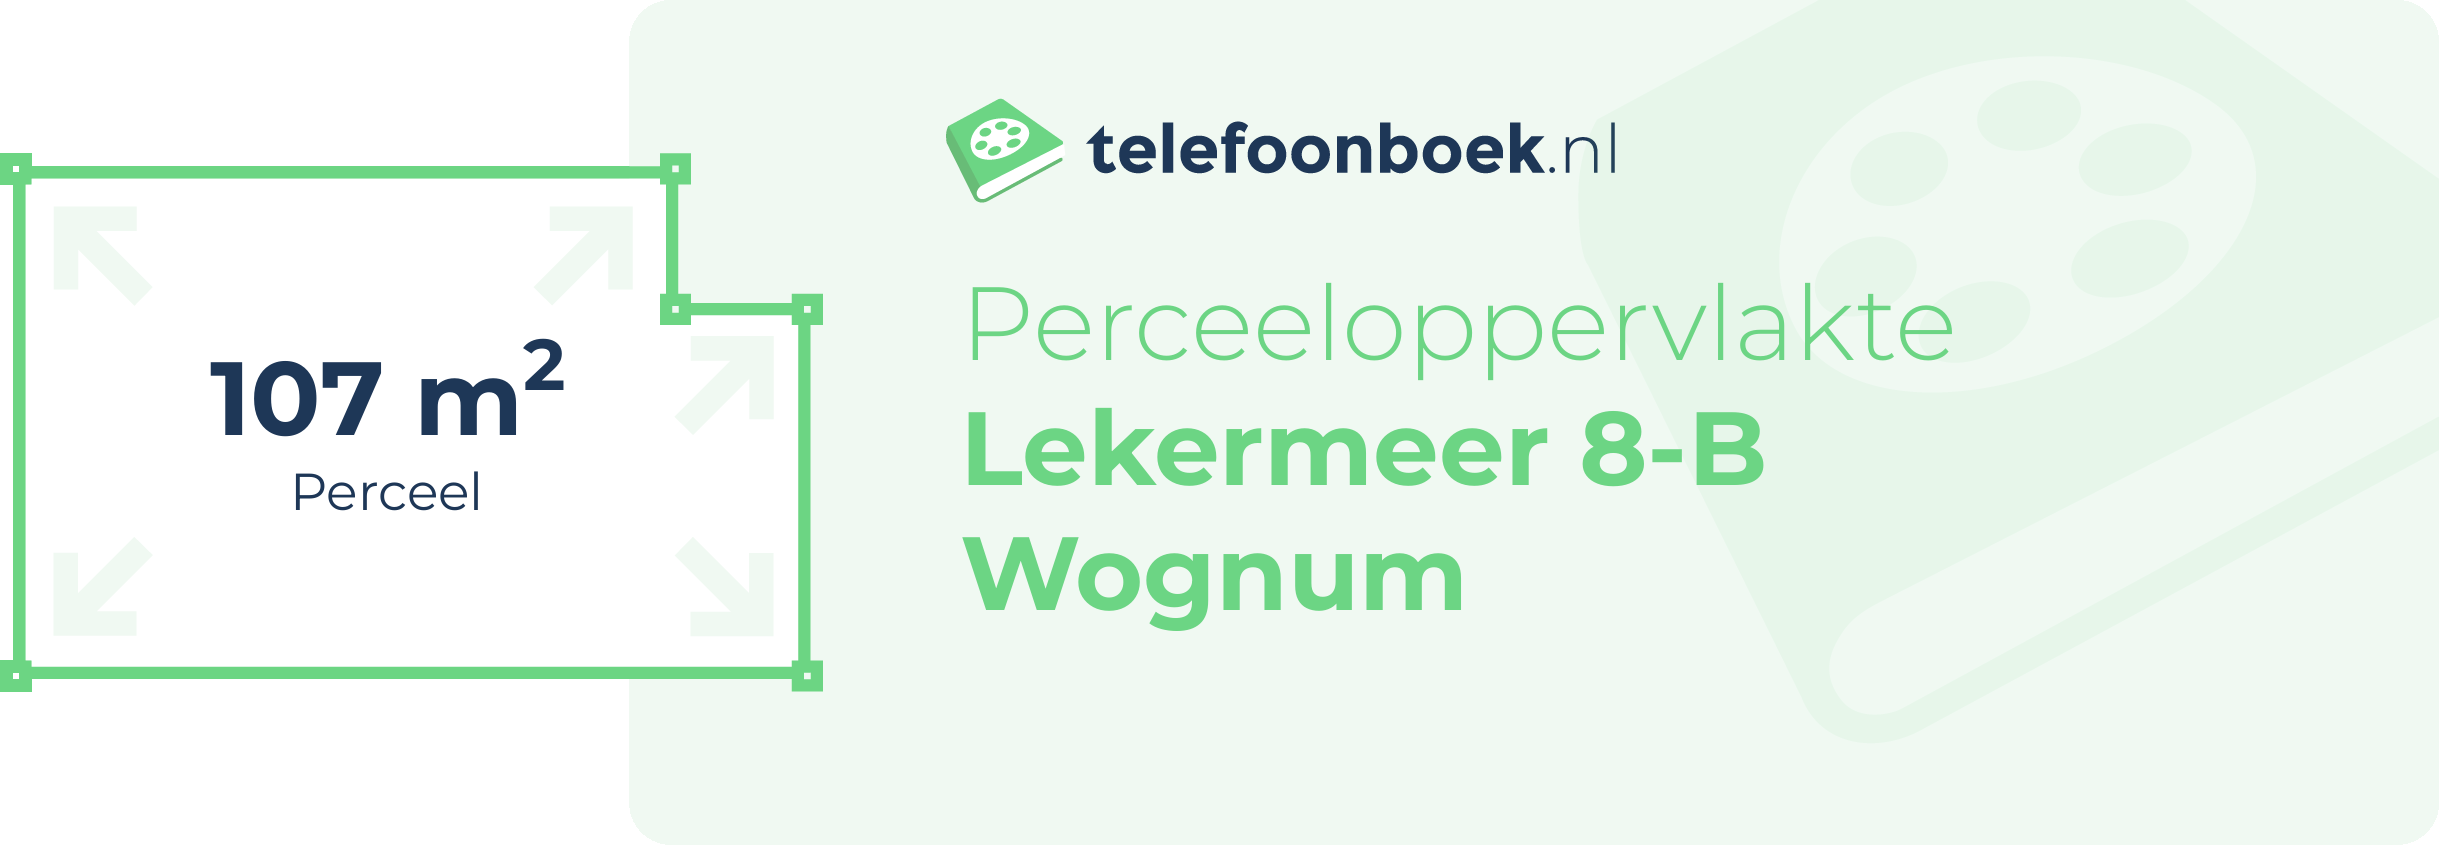 Perceeloppervlakte Lekermeer 8-B Wognum